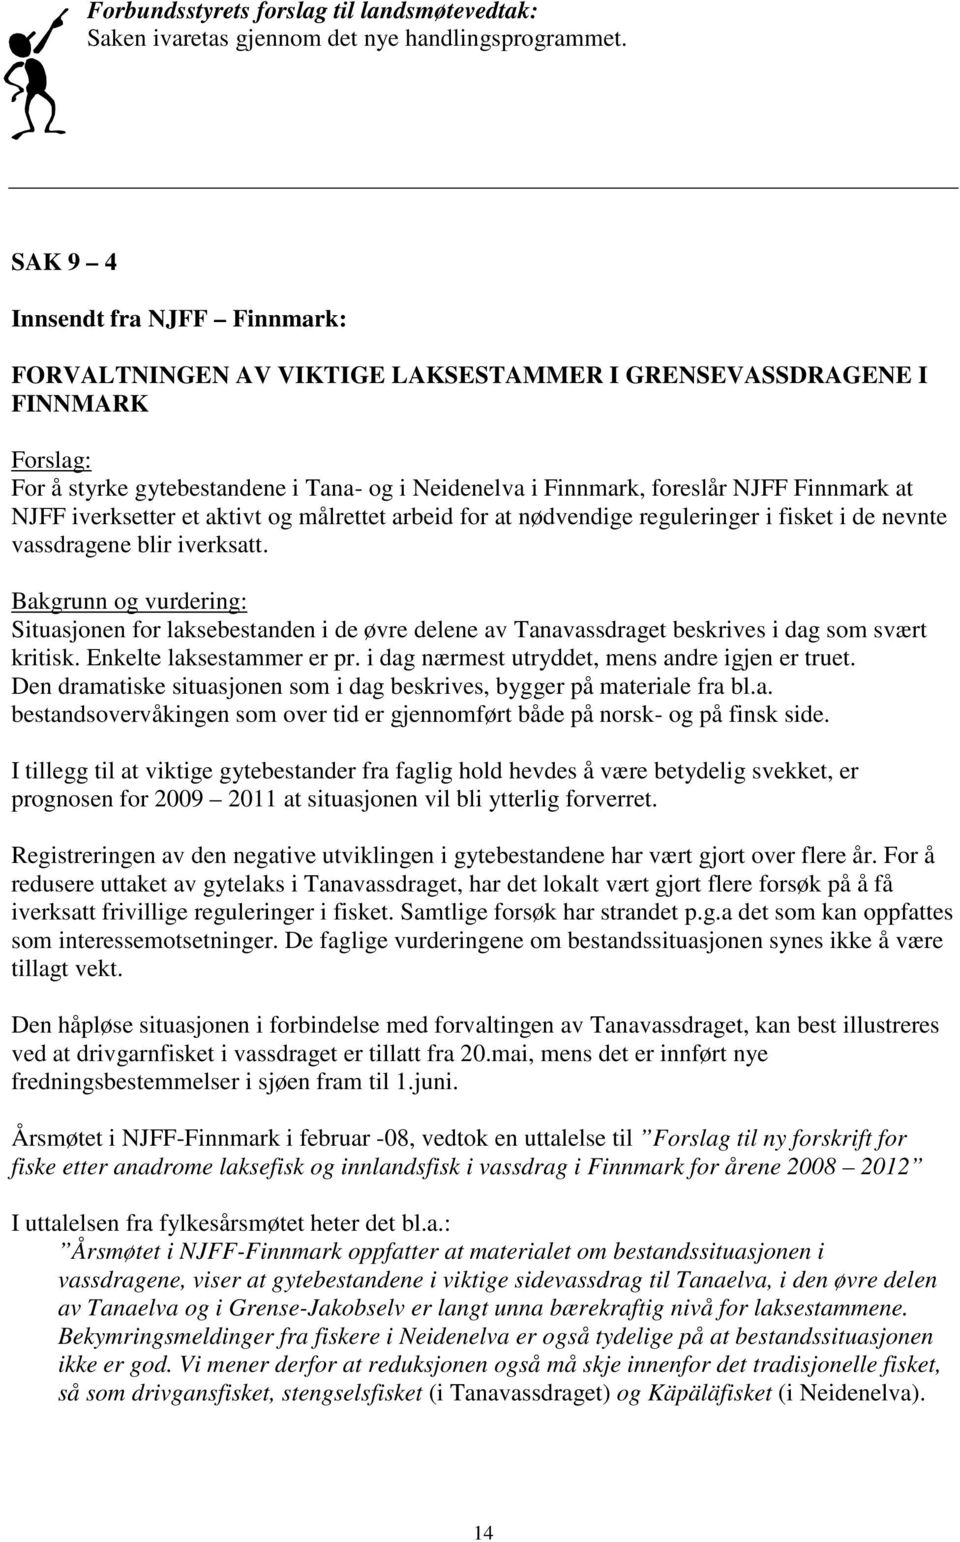 Finnmark at NJFF iverksetter et aktivt og målrettet arbeid for at nødvendige reguleringer i fisket i de nevnte vassdragene blir iverksatt.